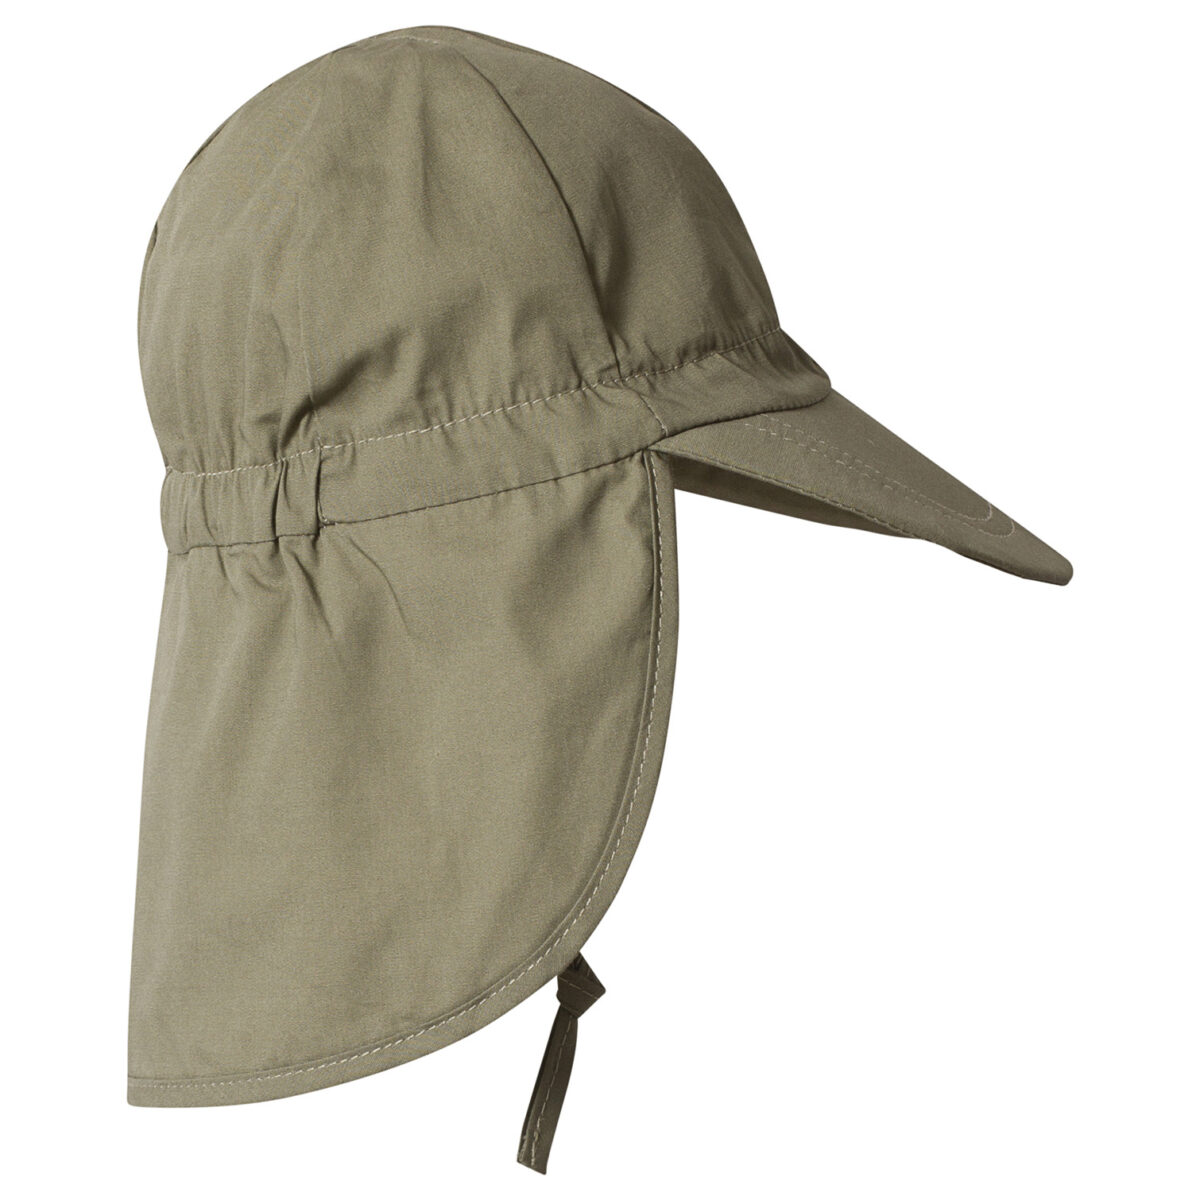 Melton UV30 kaitsega suvemüts, oliivroheline Lasteriided - HellyK - Kvaliteetsed lasteriided, villariided, barefoot jalatsid